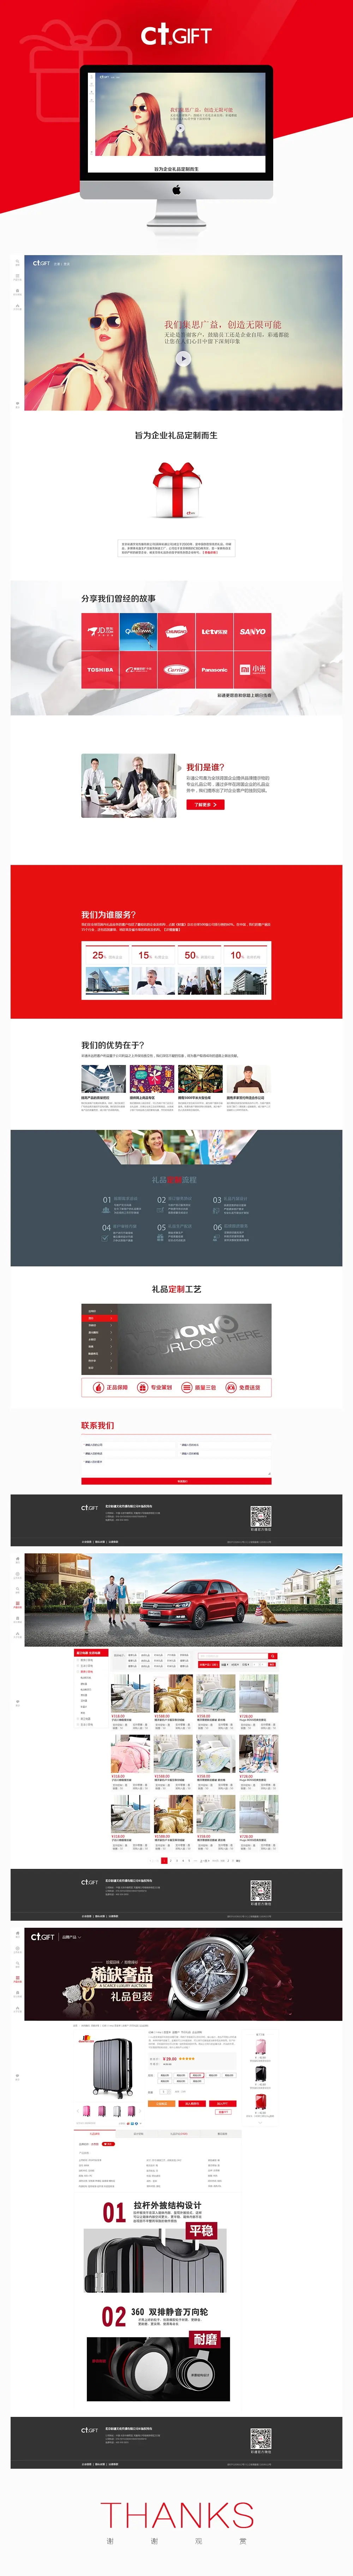 企业网站UI设计 彩通中国整站设计 佰上设计